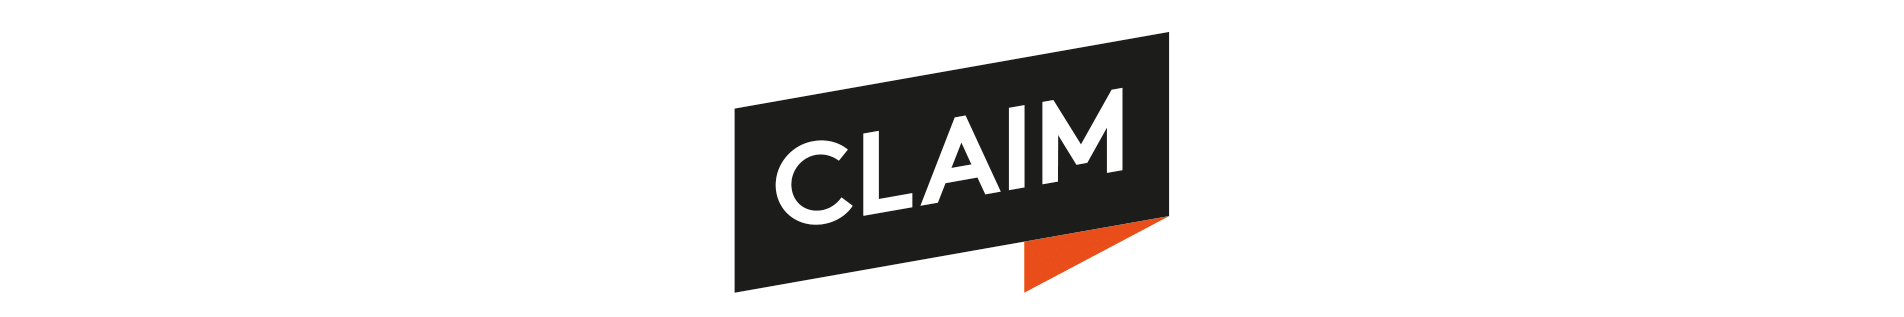 CLAIM logo